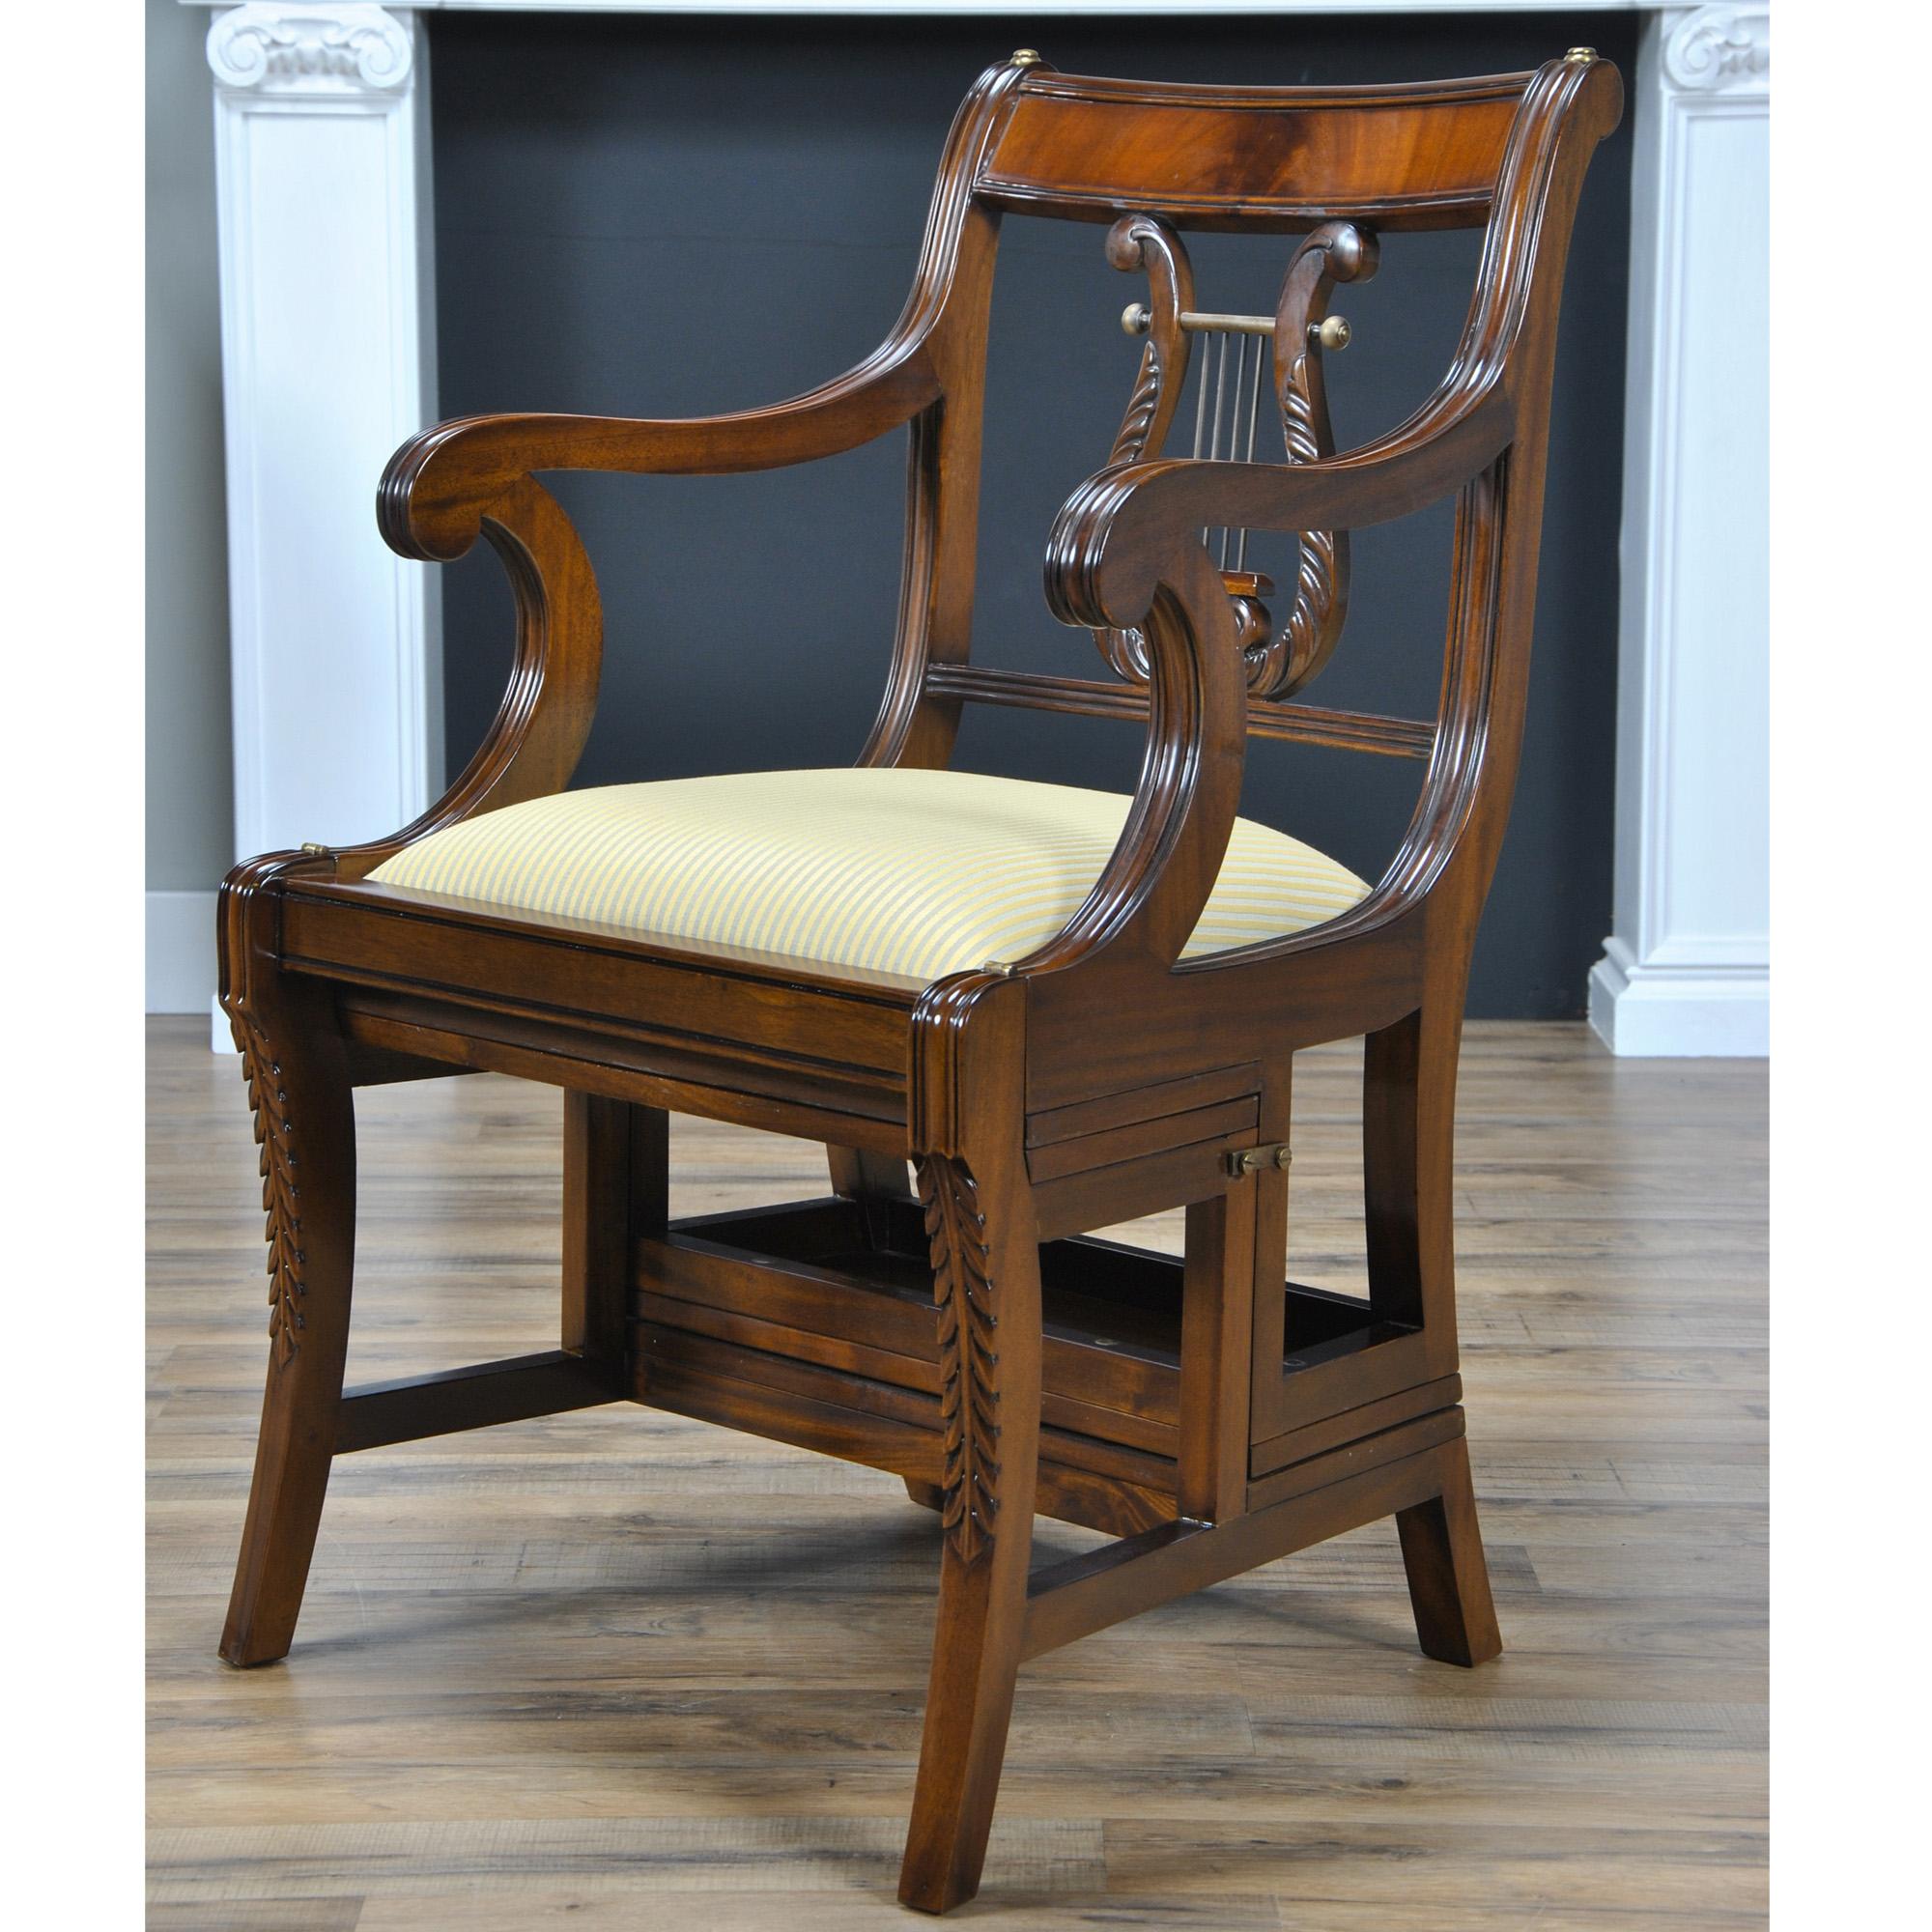 La chaise de bibliothèque en acajou, également connue sous le nom de chaise métamorphique, a été créée par Niagara Furniture. Ce fauteuil de bibliothèque en acajou est fabriqué avec un dossier de harpe très recherché, également appelé dossier de